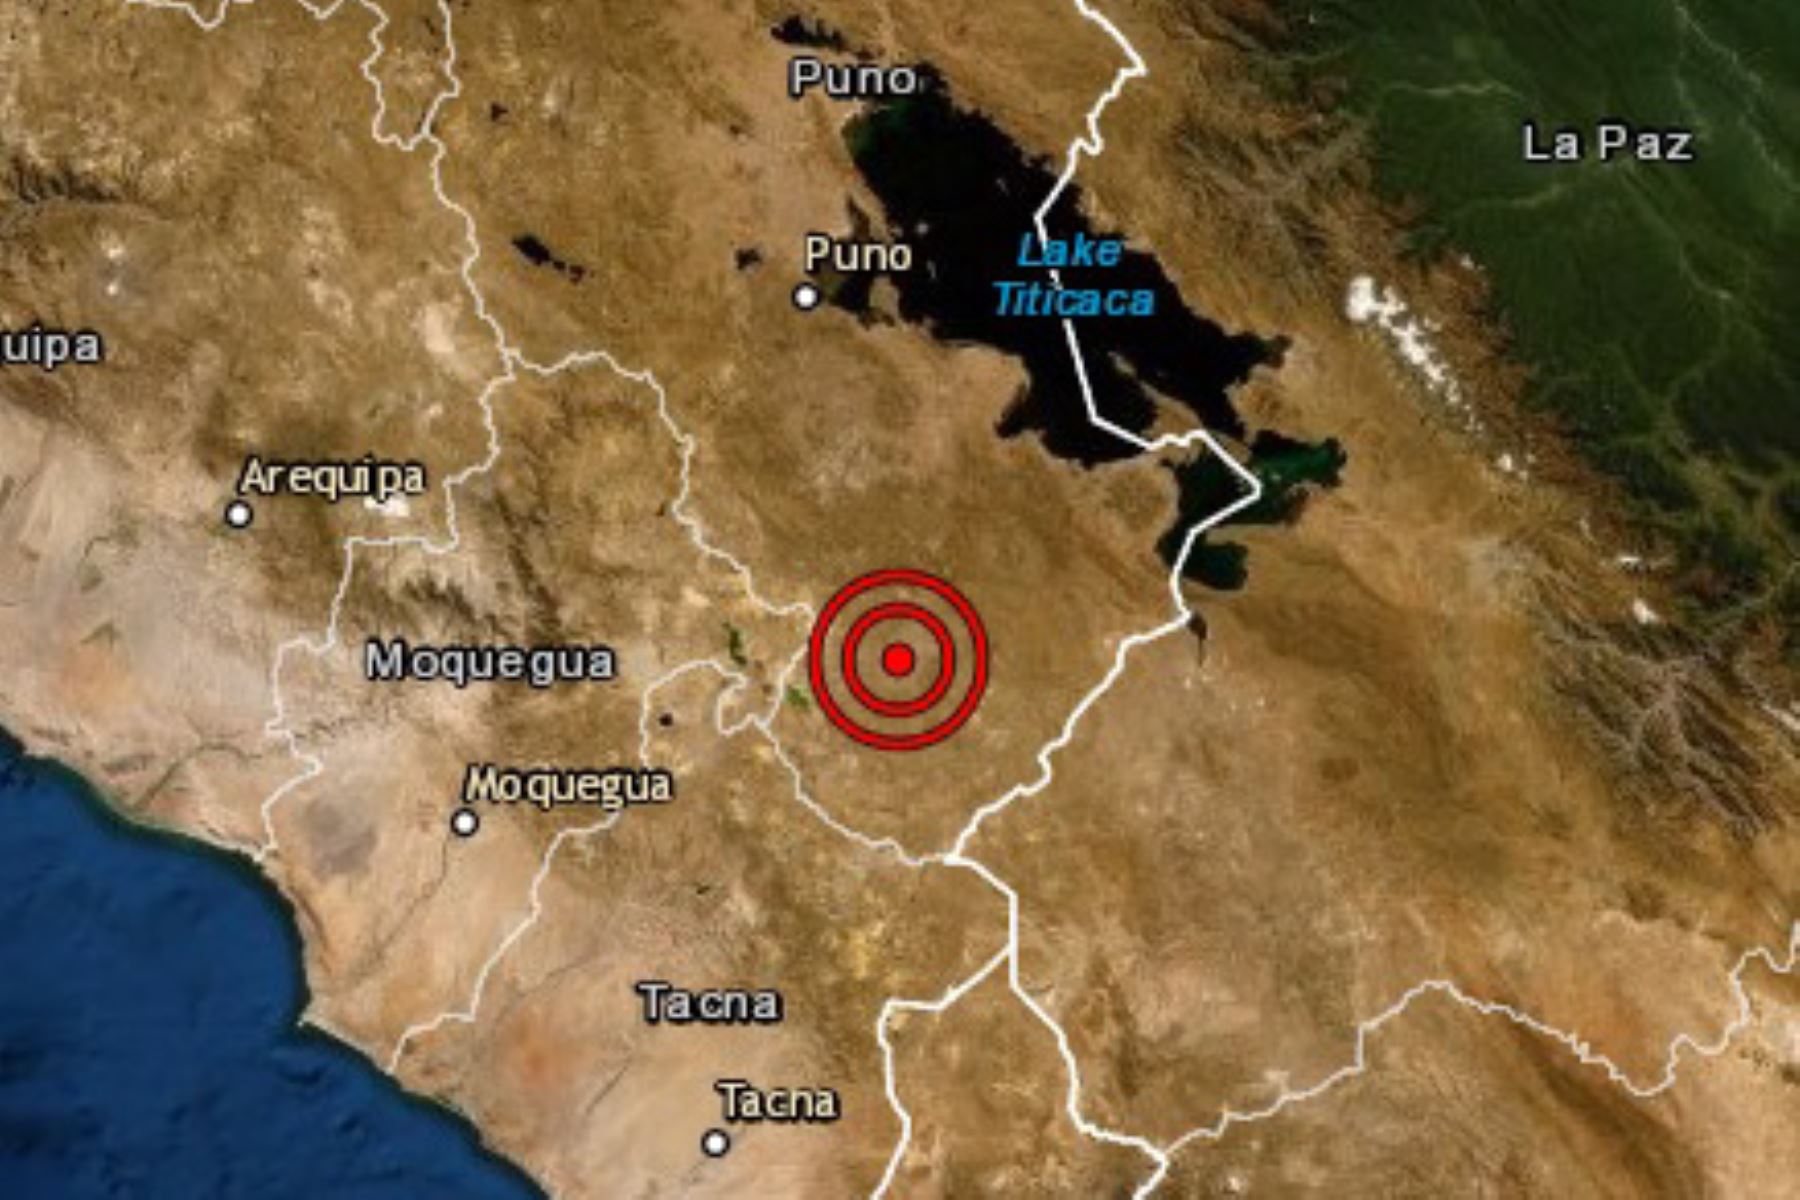 Un sismo de magnitud 4.0 se registró hoy en el departamento de Puno, el segundo ocurrido en esa región y el número 39 en el país en lo que va del año, informó el Instituto Geofísico del Perú (IGP).